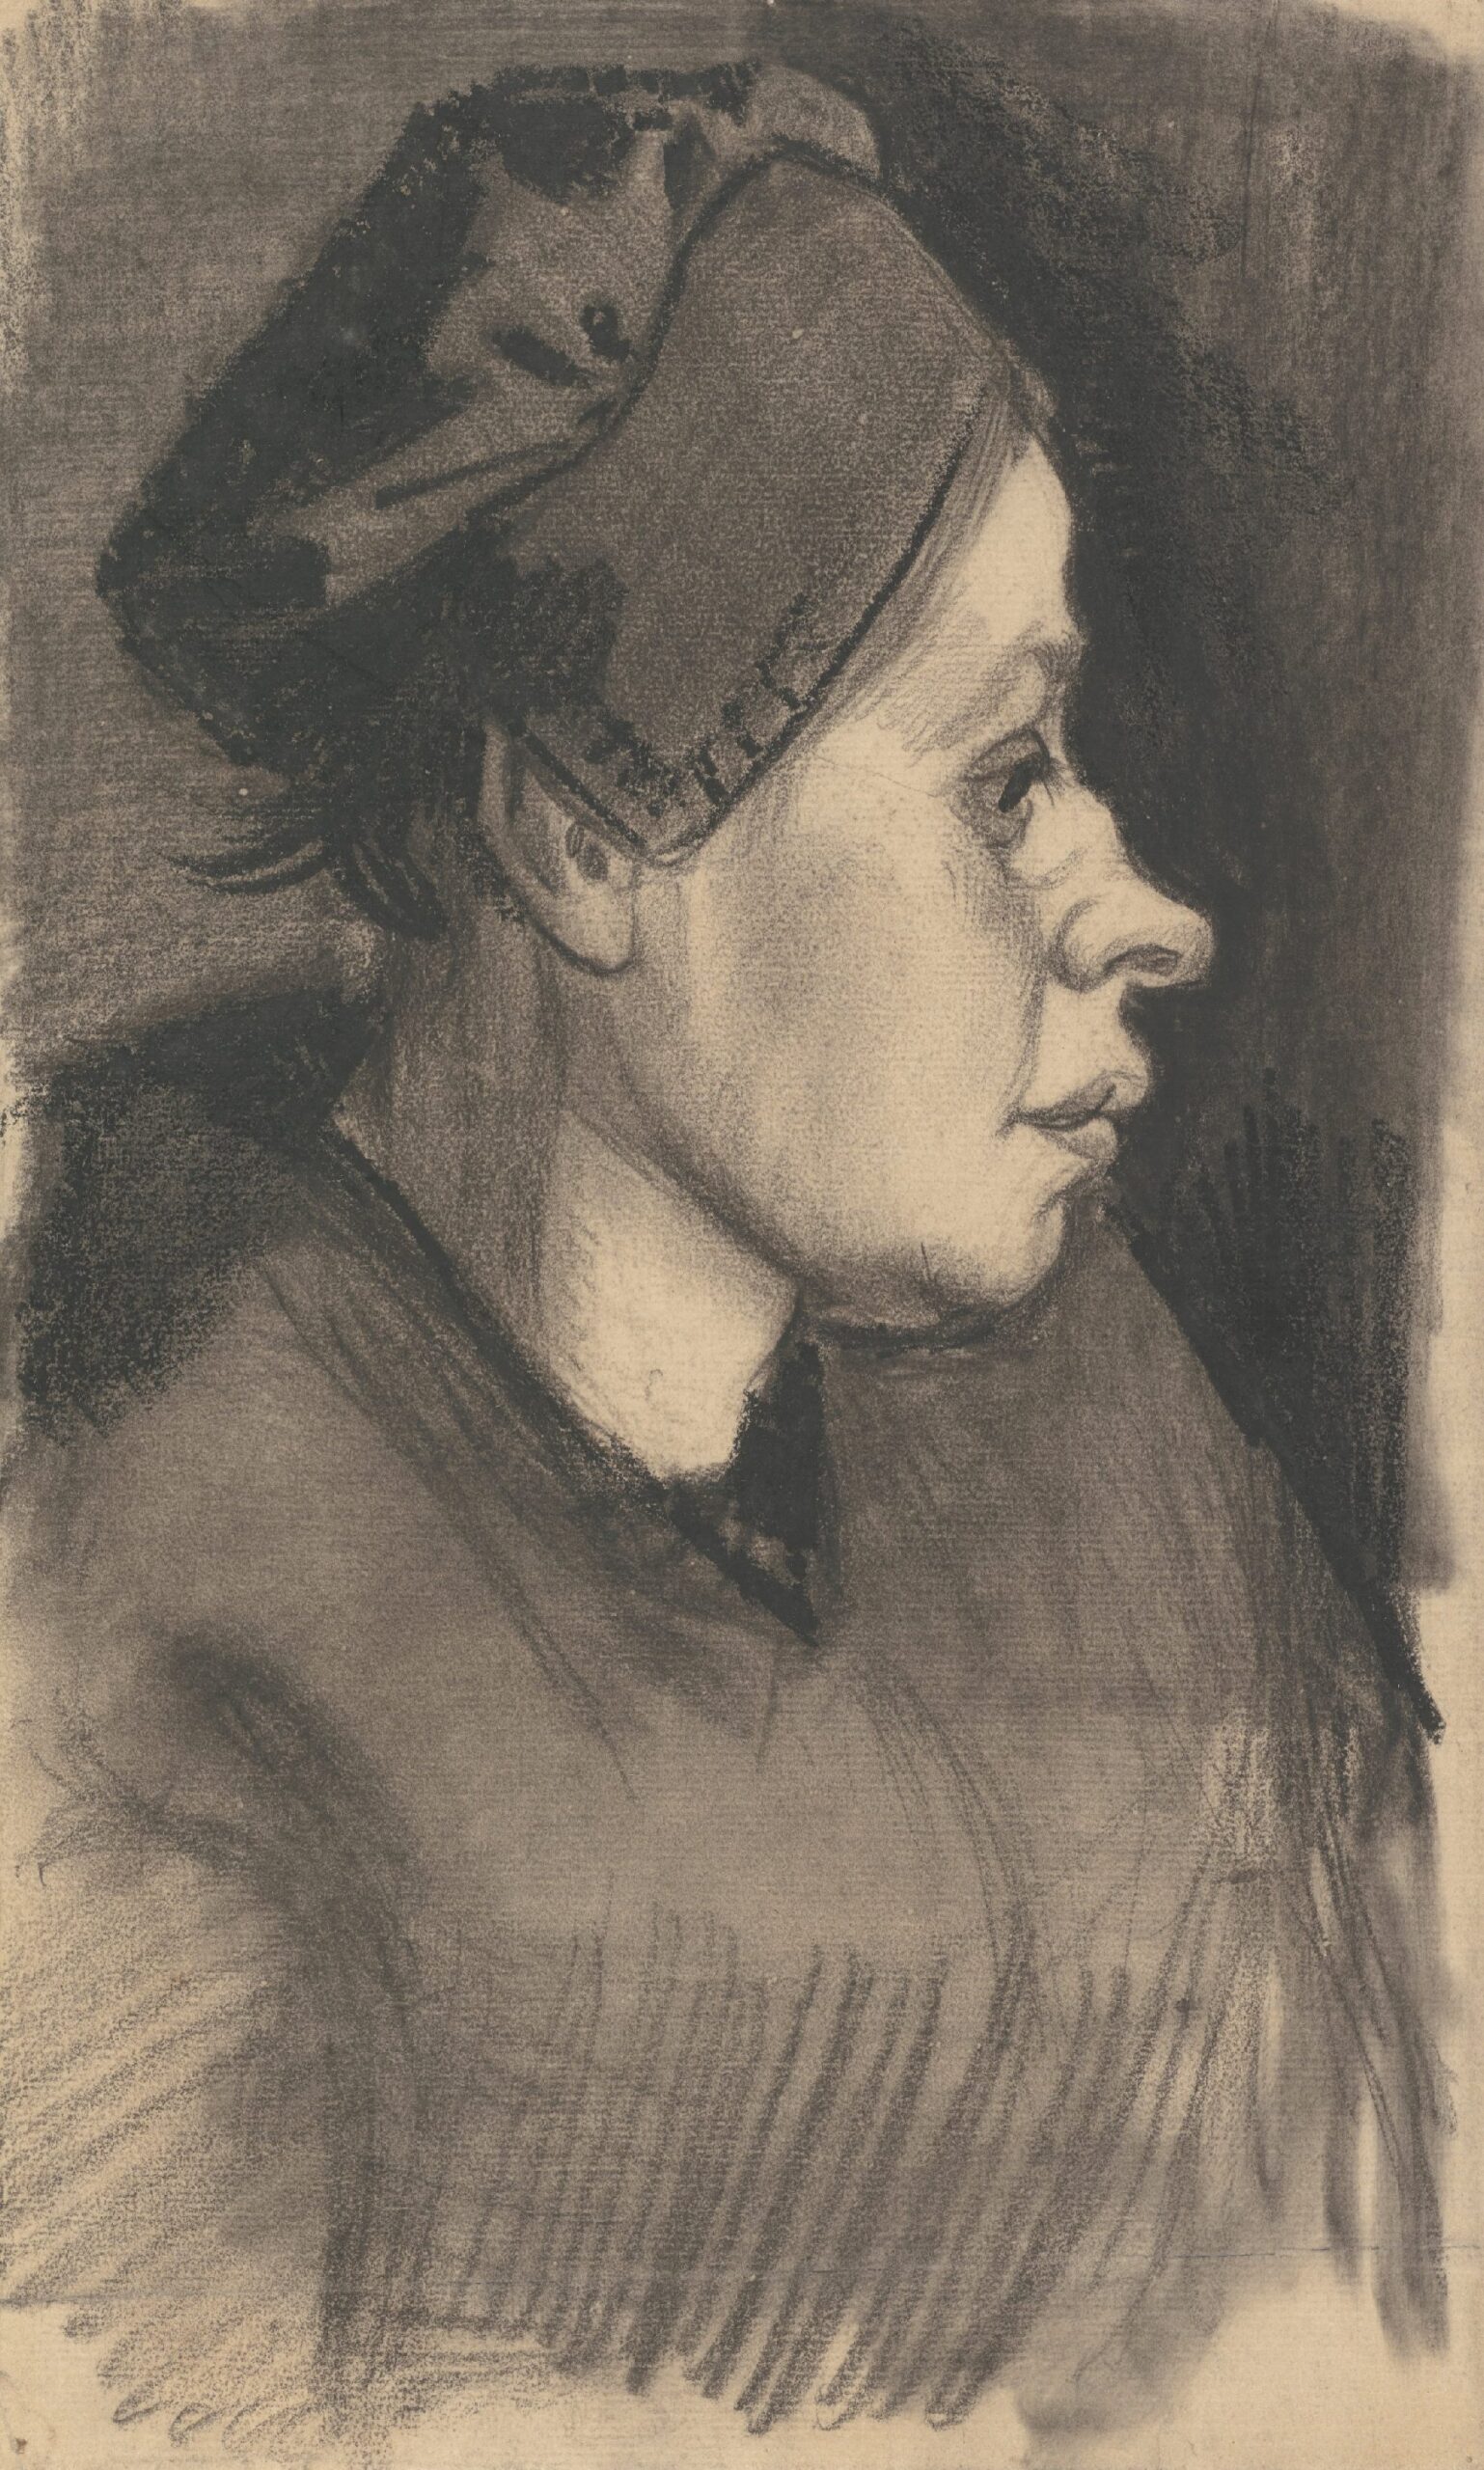 Kop van een vrouw Vincent van Gogh (1853 - 1890), Nuenen, december 1884-mei 1885